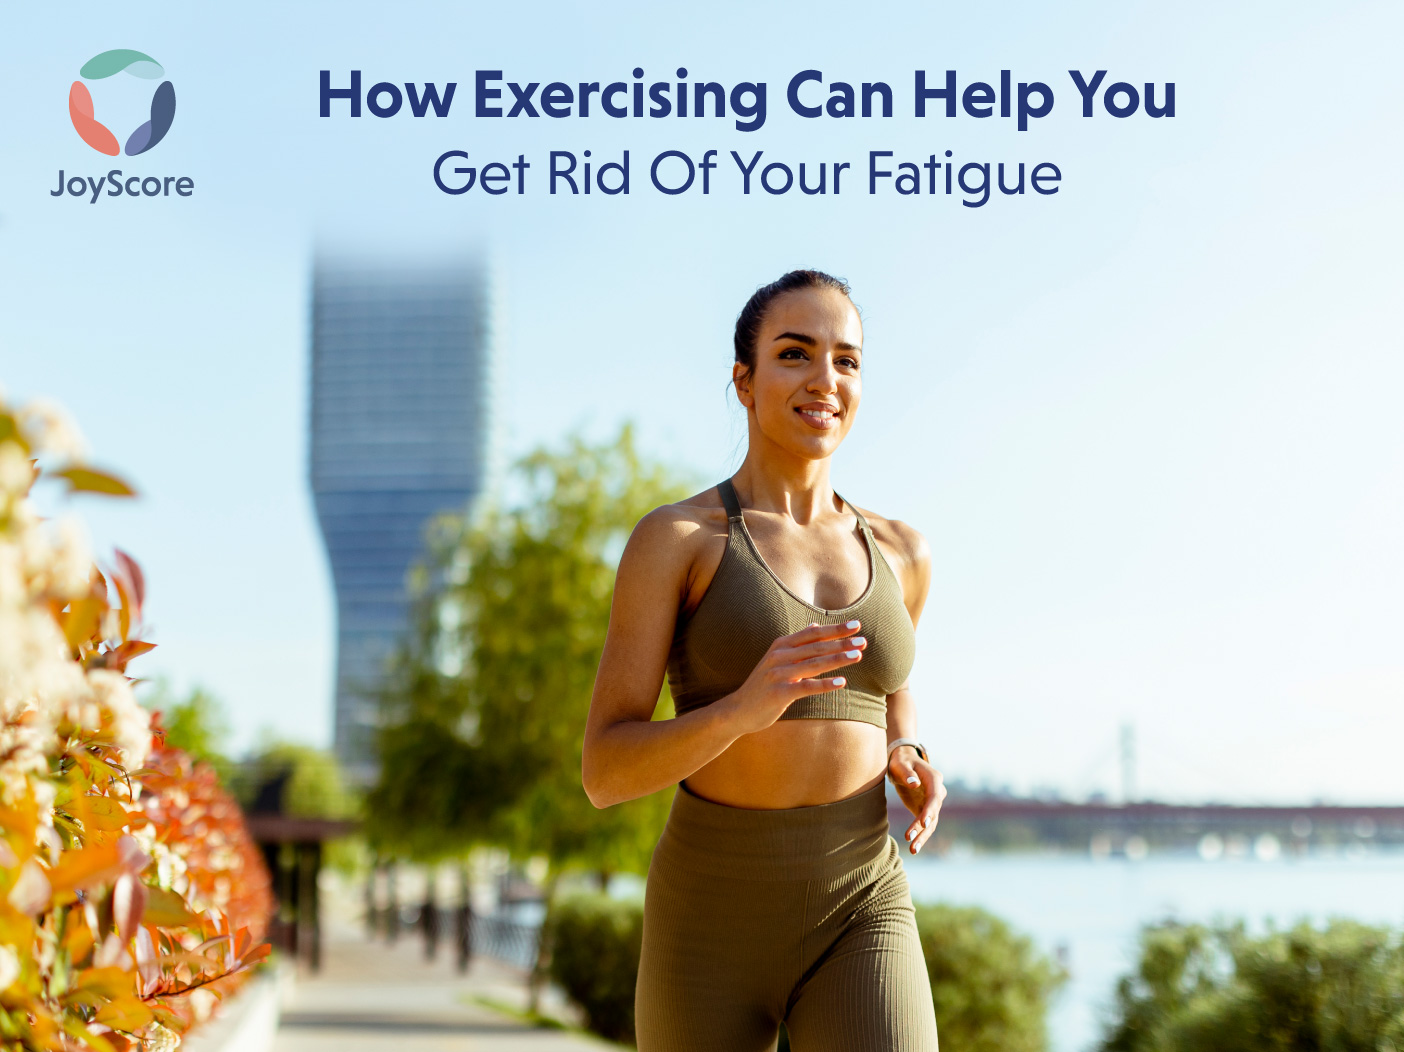 Exercise Reduces Fatigue